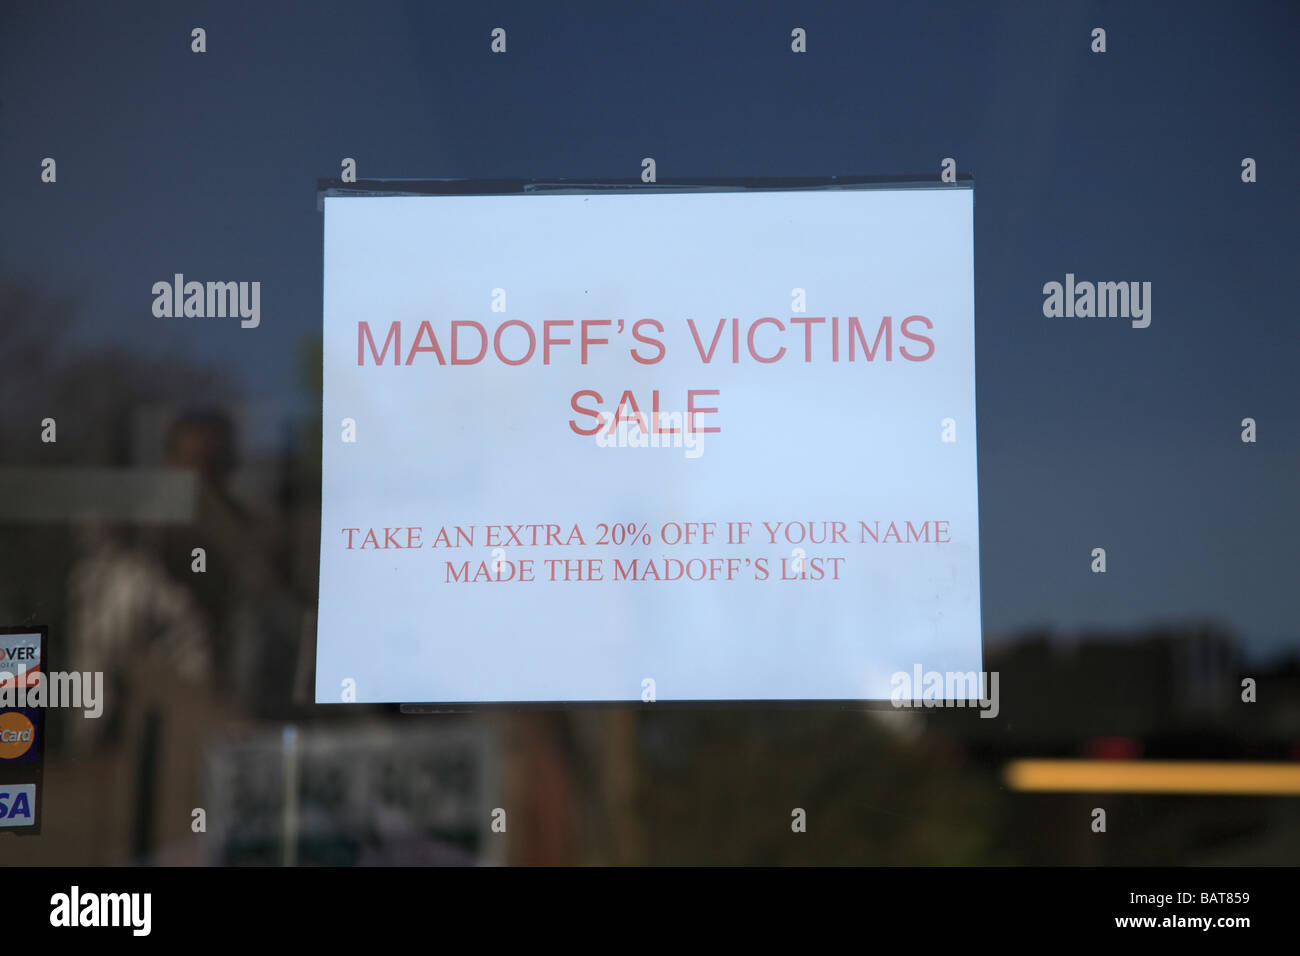 Inscrivez-vous sur les boutiques de mode à Greenwich Village offre une remise aux victimes du scandale Bernard Madoff Ponzi Scheme Banque D'Images